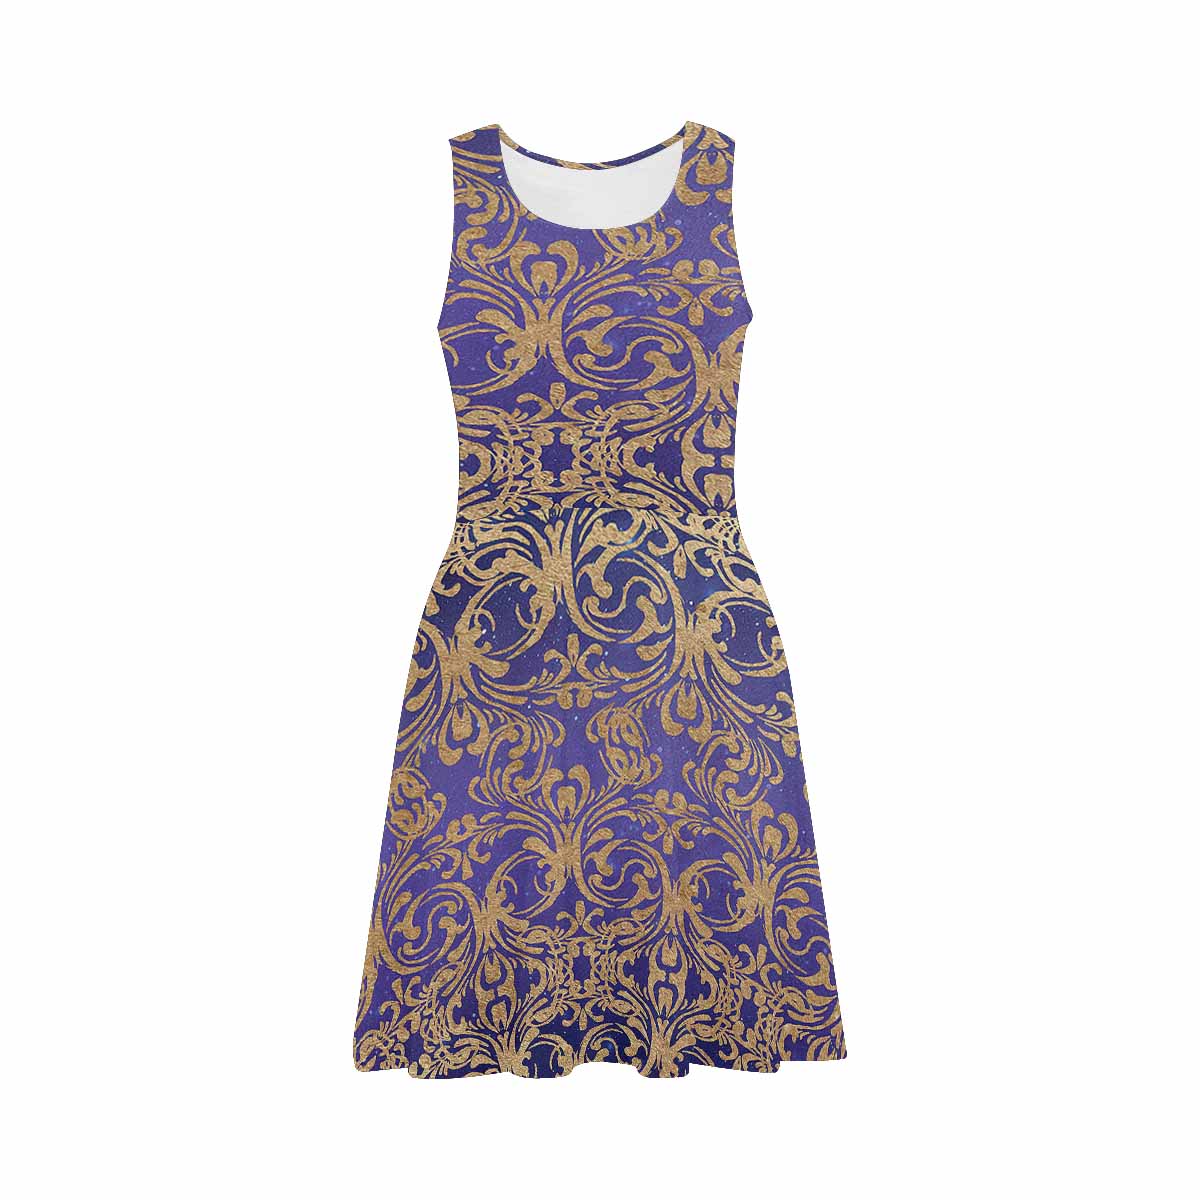 Antique General summer dress, MODEL 09534, design 41